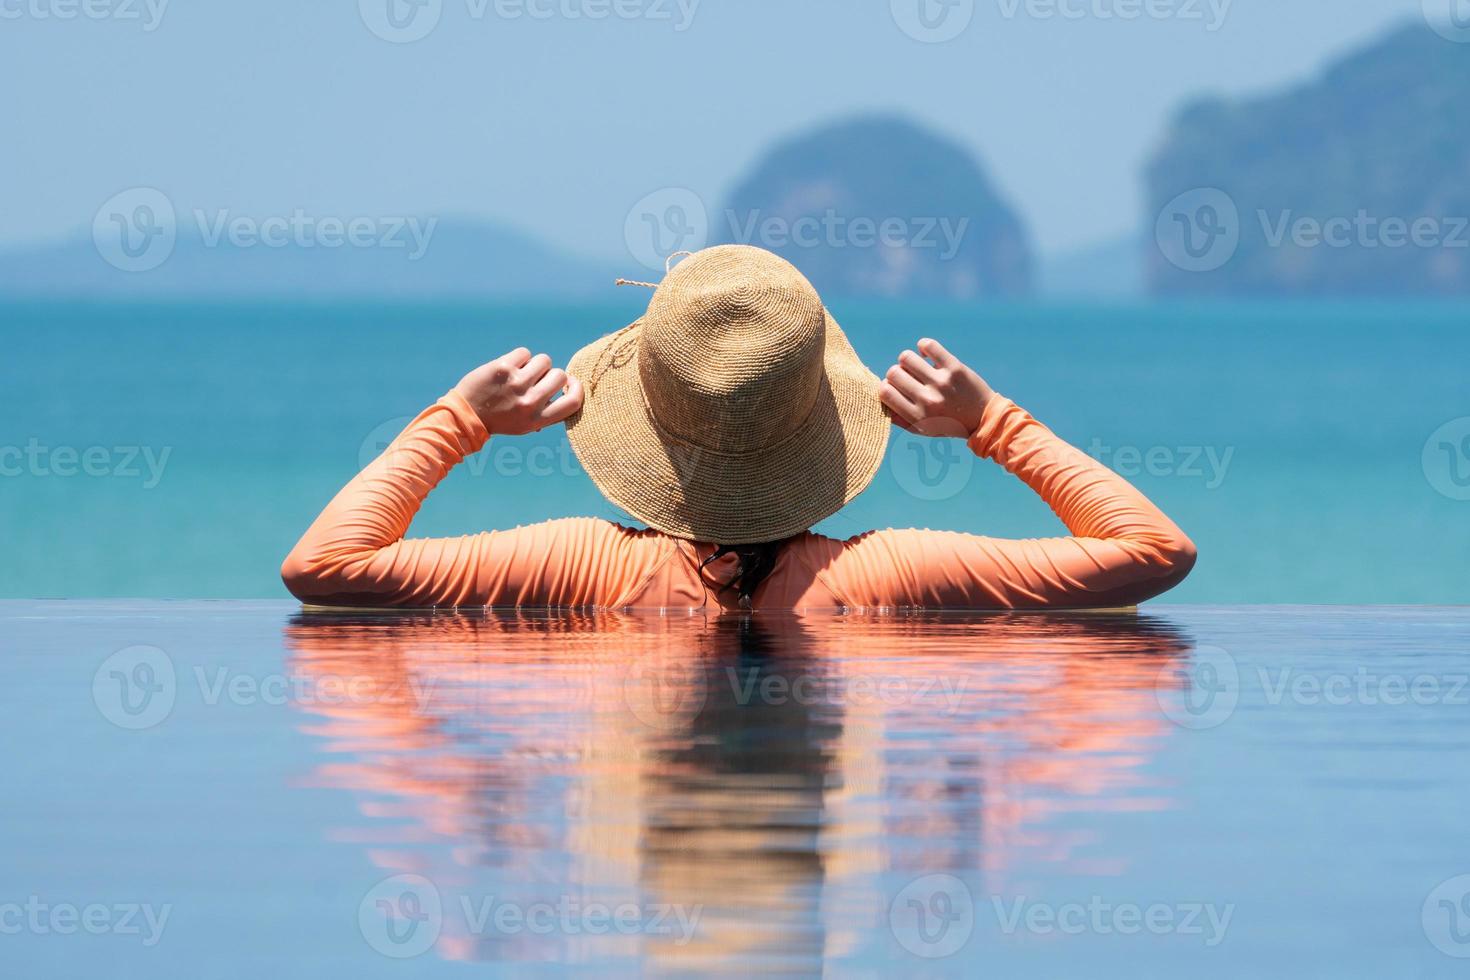 retrato de uma jovem com chapéu de palha e maiô em pé na piscina azul infinita, olhando para a vista de ocian nas férias de verão foto